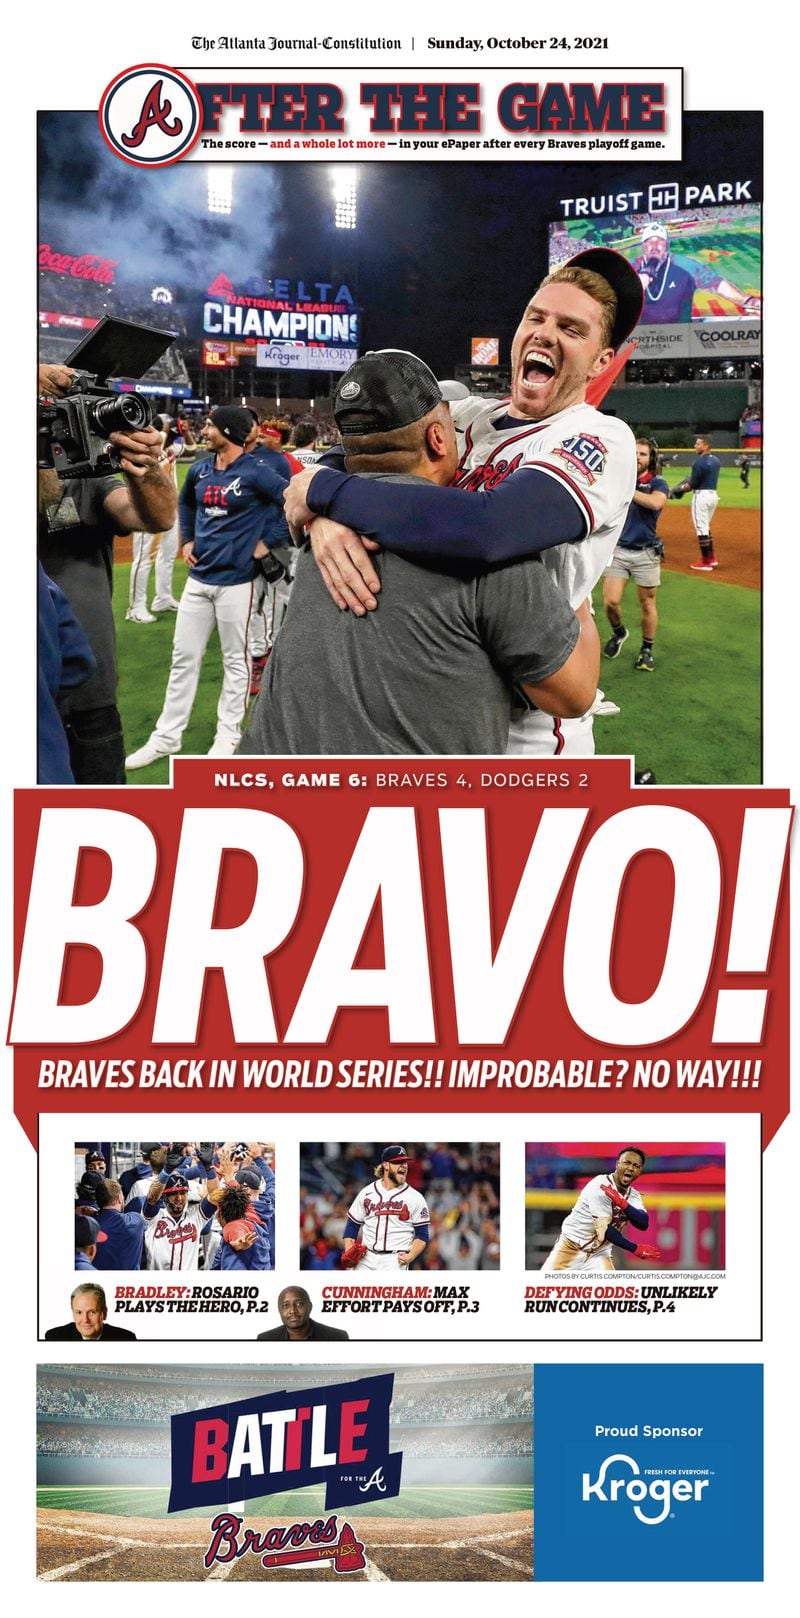 ‘Bravo!’ – Atlanta Braves game section in today’s ePaper